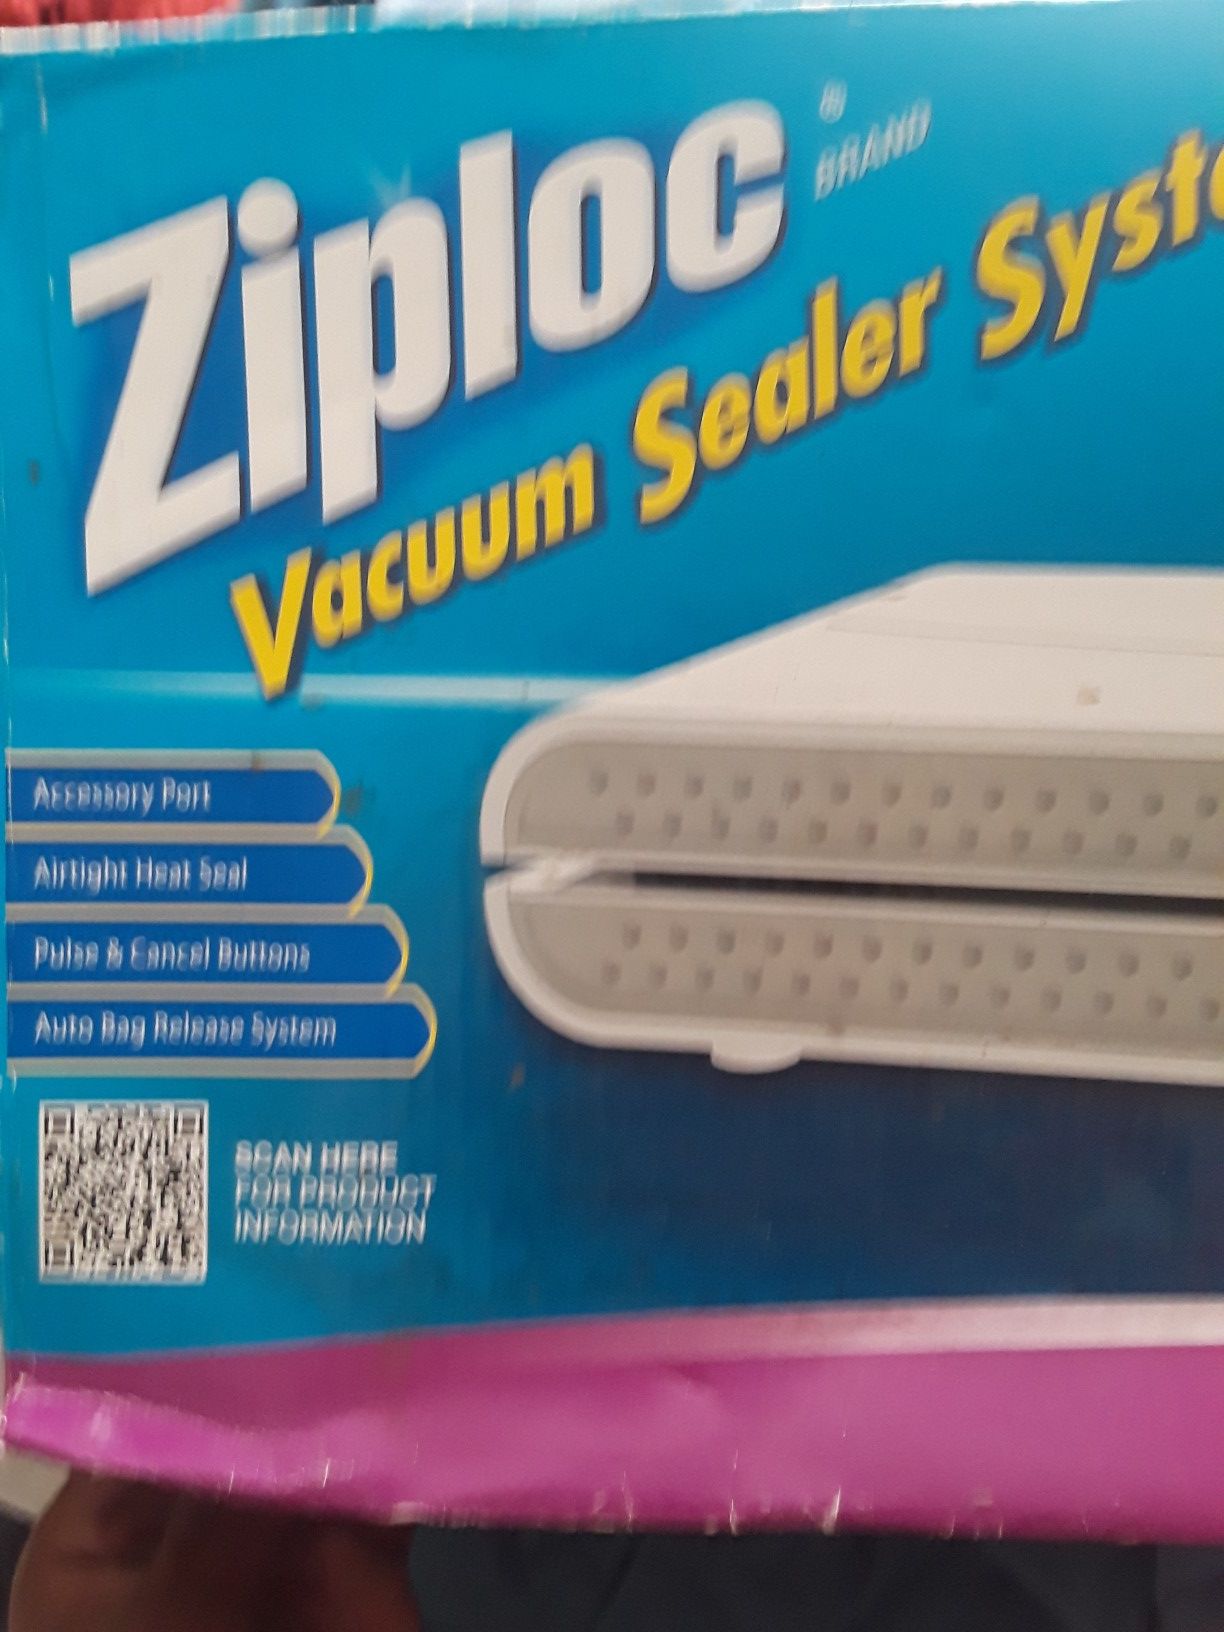 Ziploc Vacuum Sealer System w/ extra box of bags